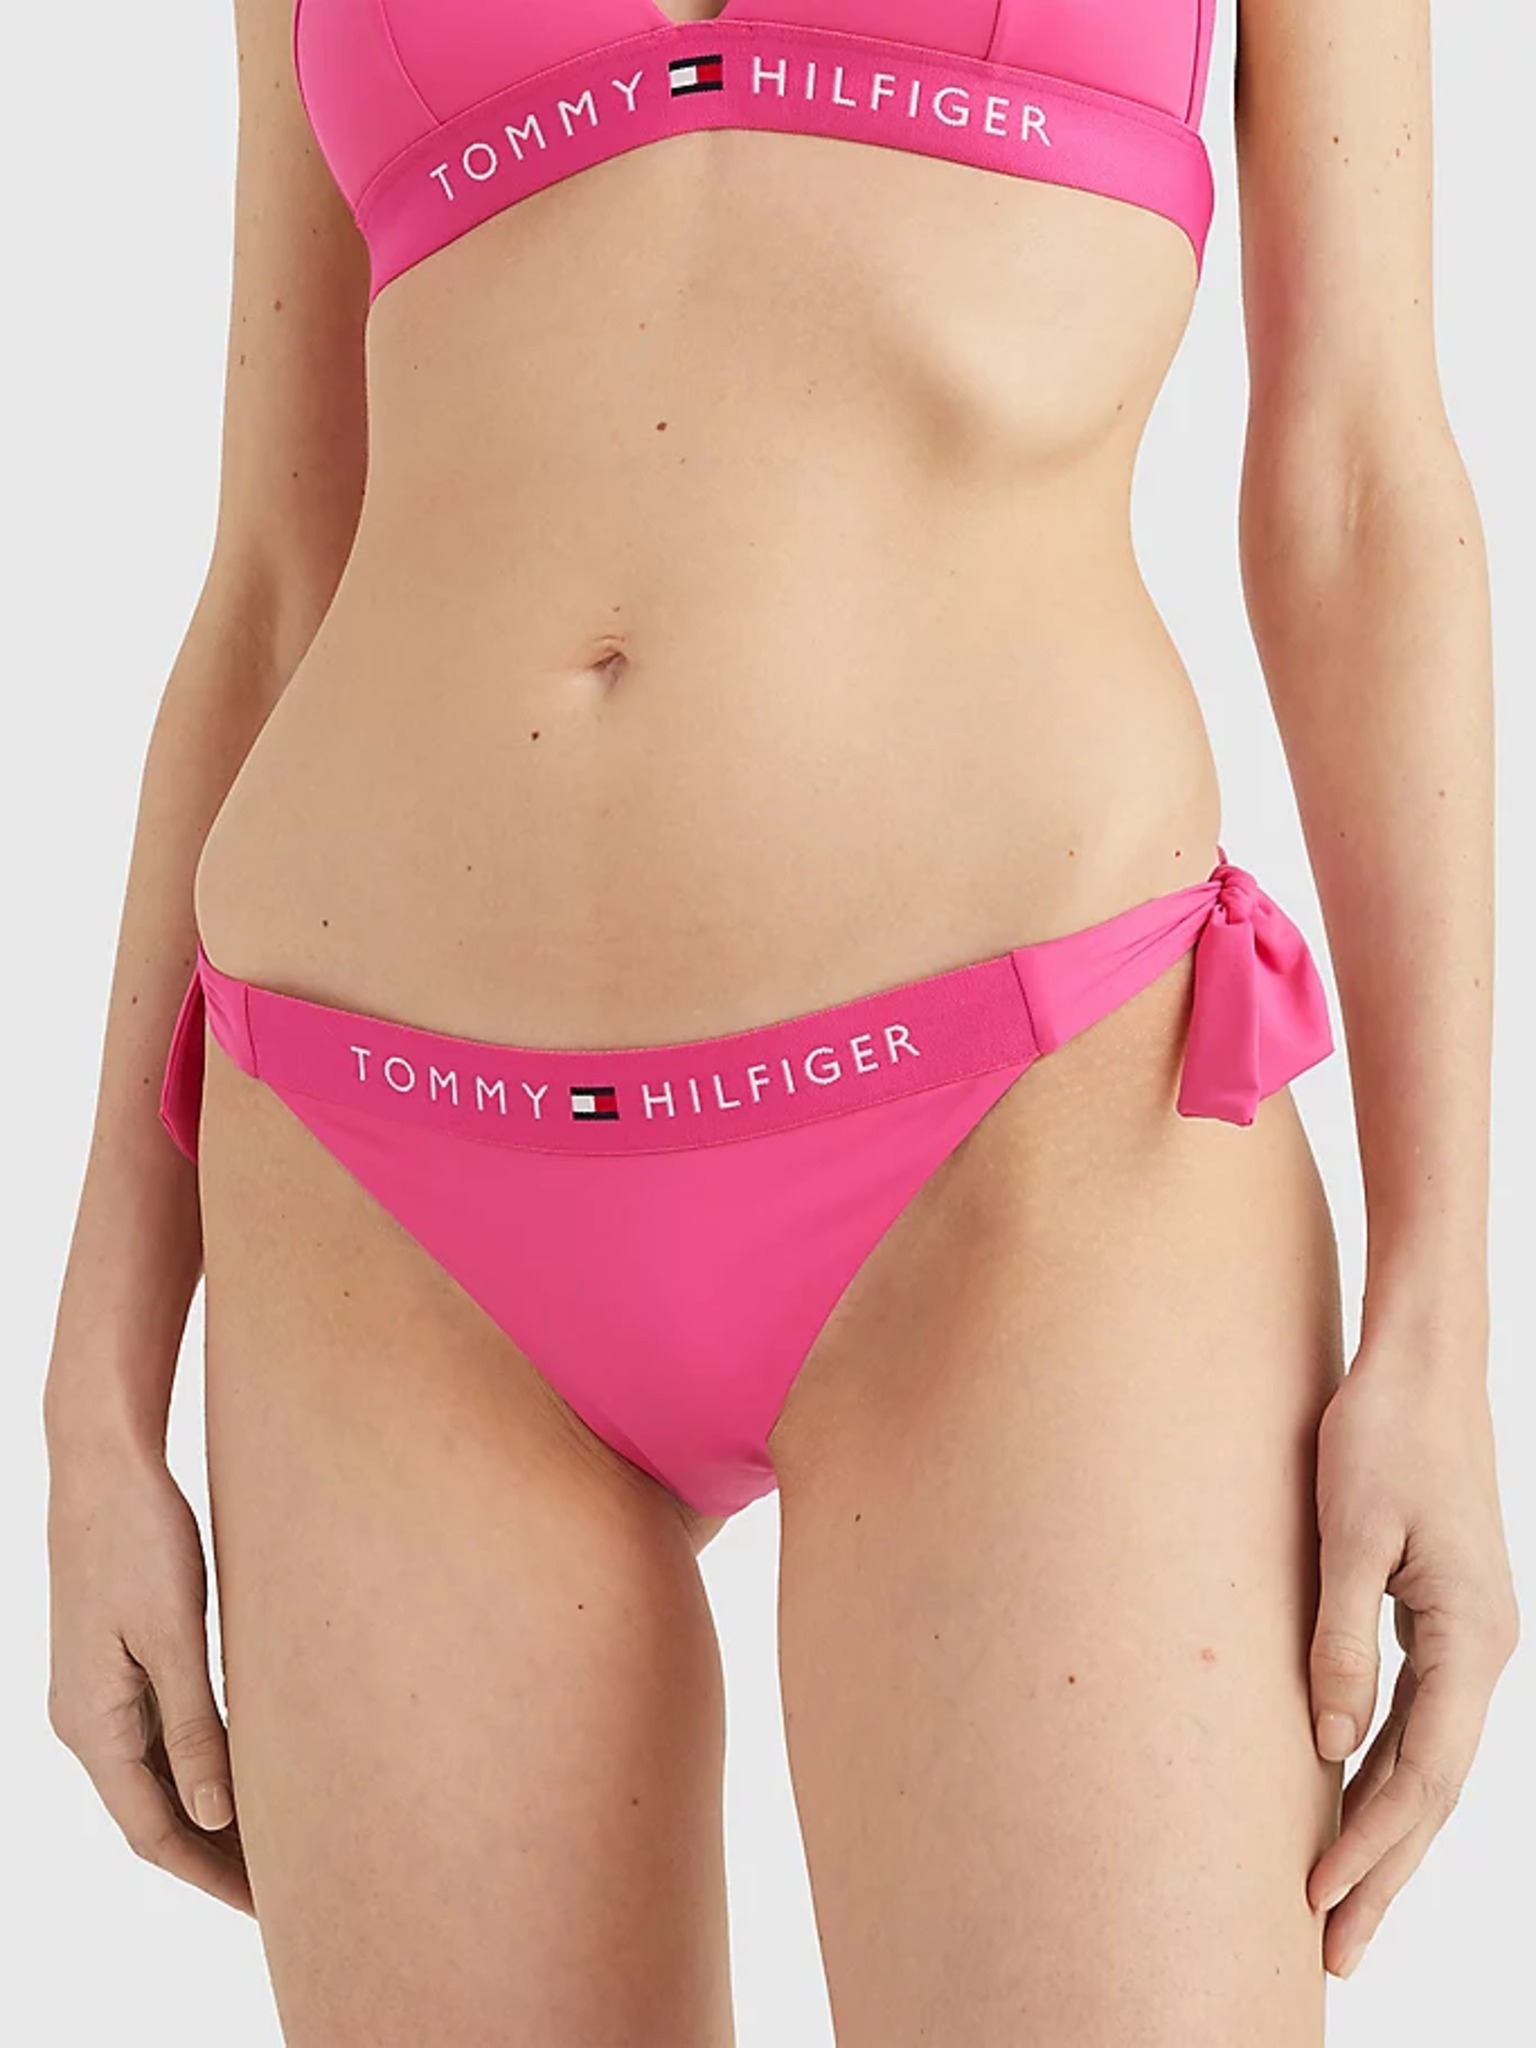 bottom - Hilfiger Tommy Underwear Bikini